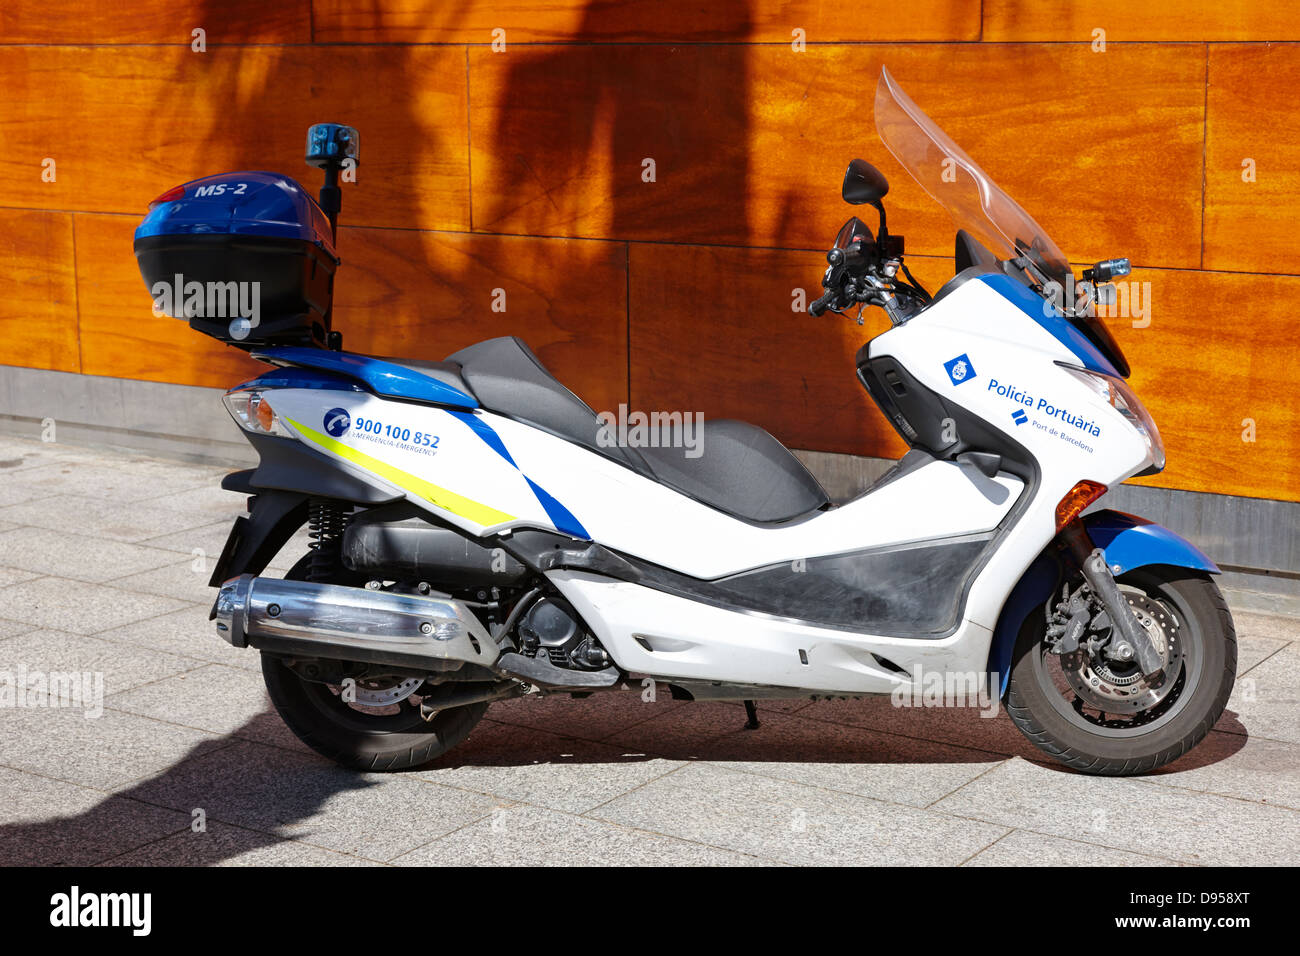 Policia portuaria polizia portuale moto scooter veicolo porto di Barcellona Catalonia Spagna Foto Stock